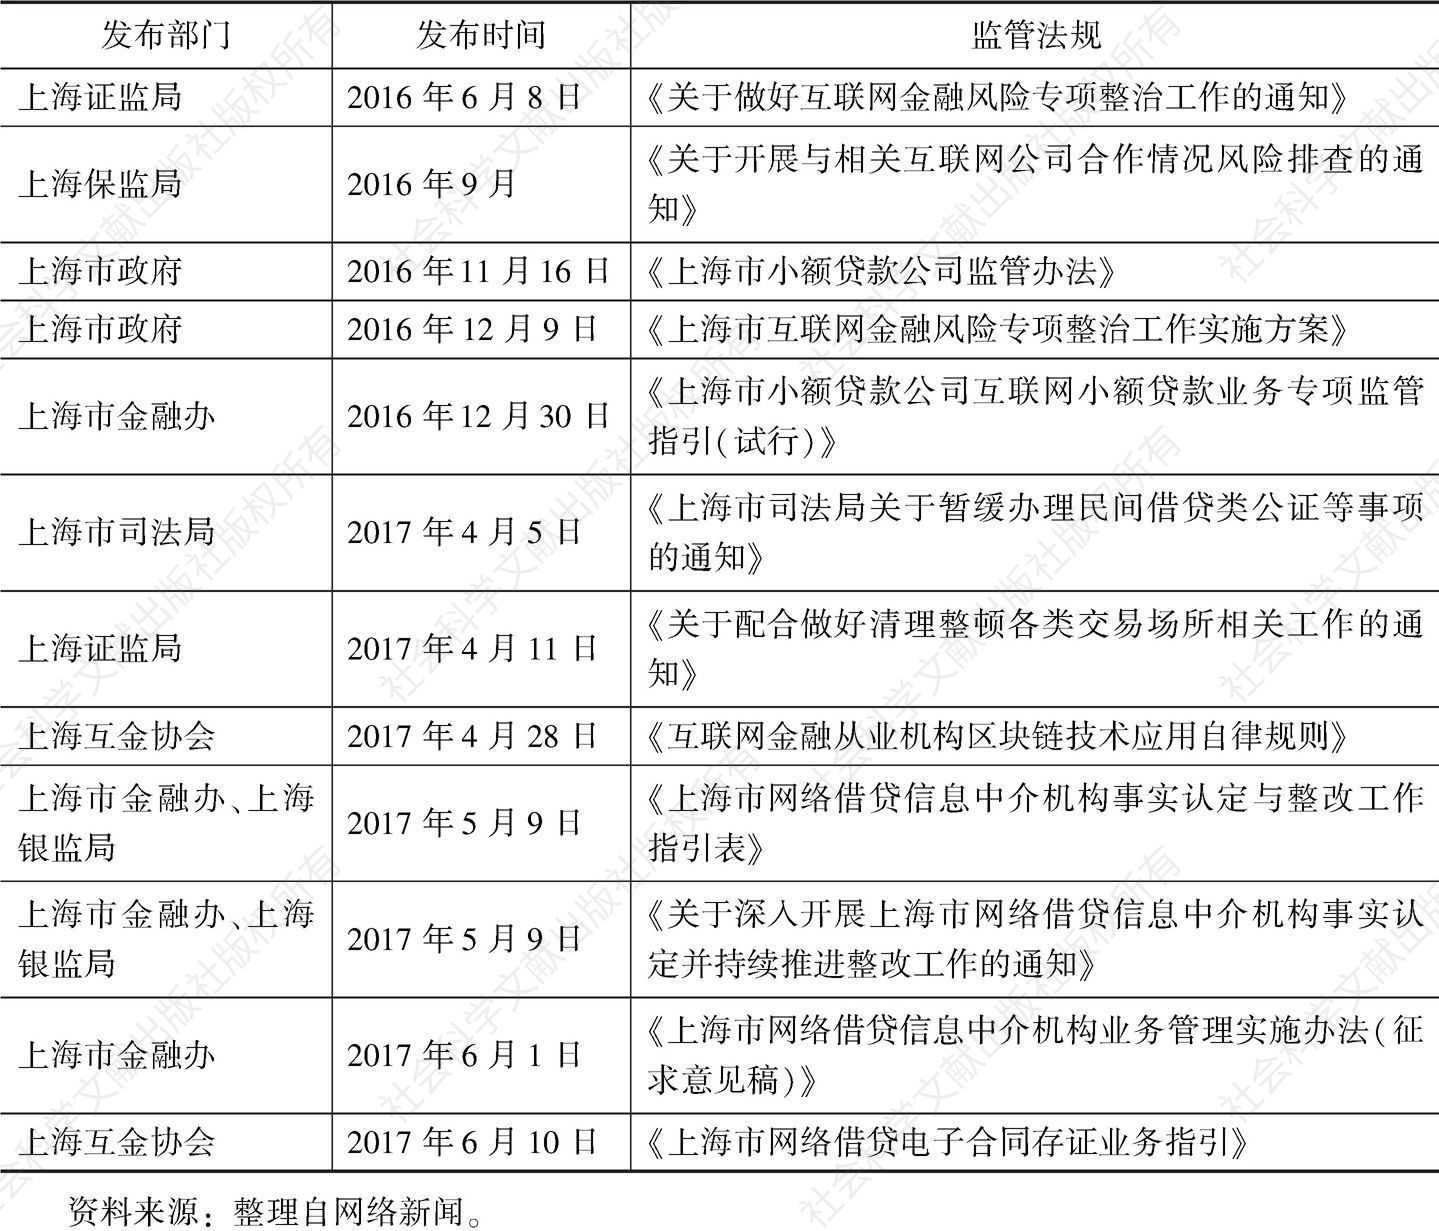 表1 上海市互金行业风险专项整治期间发布的监管政策与规定